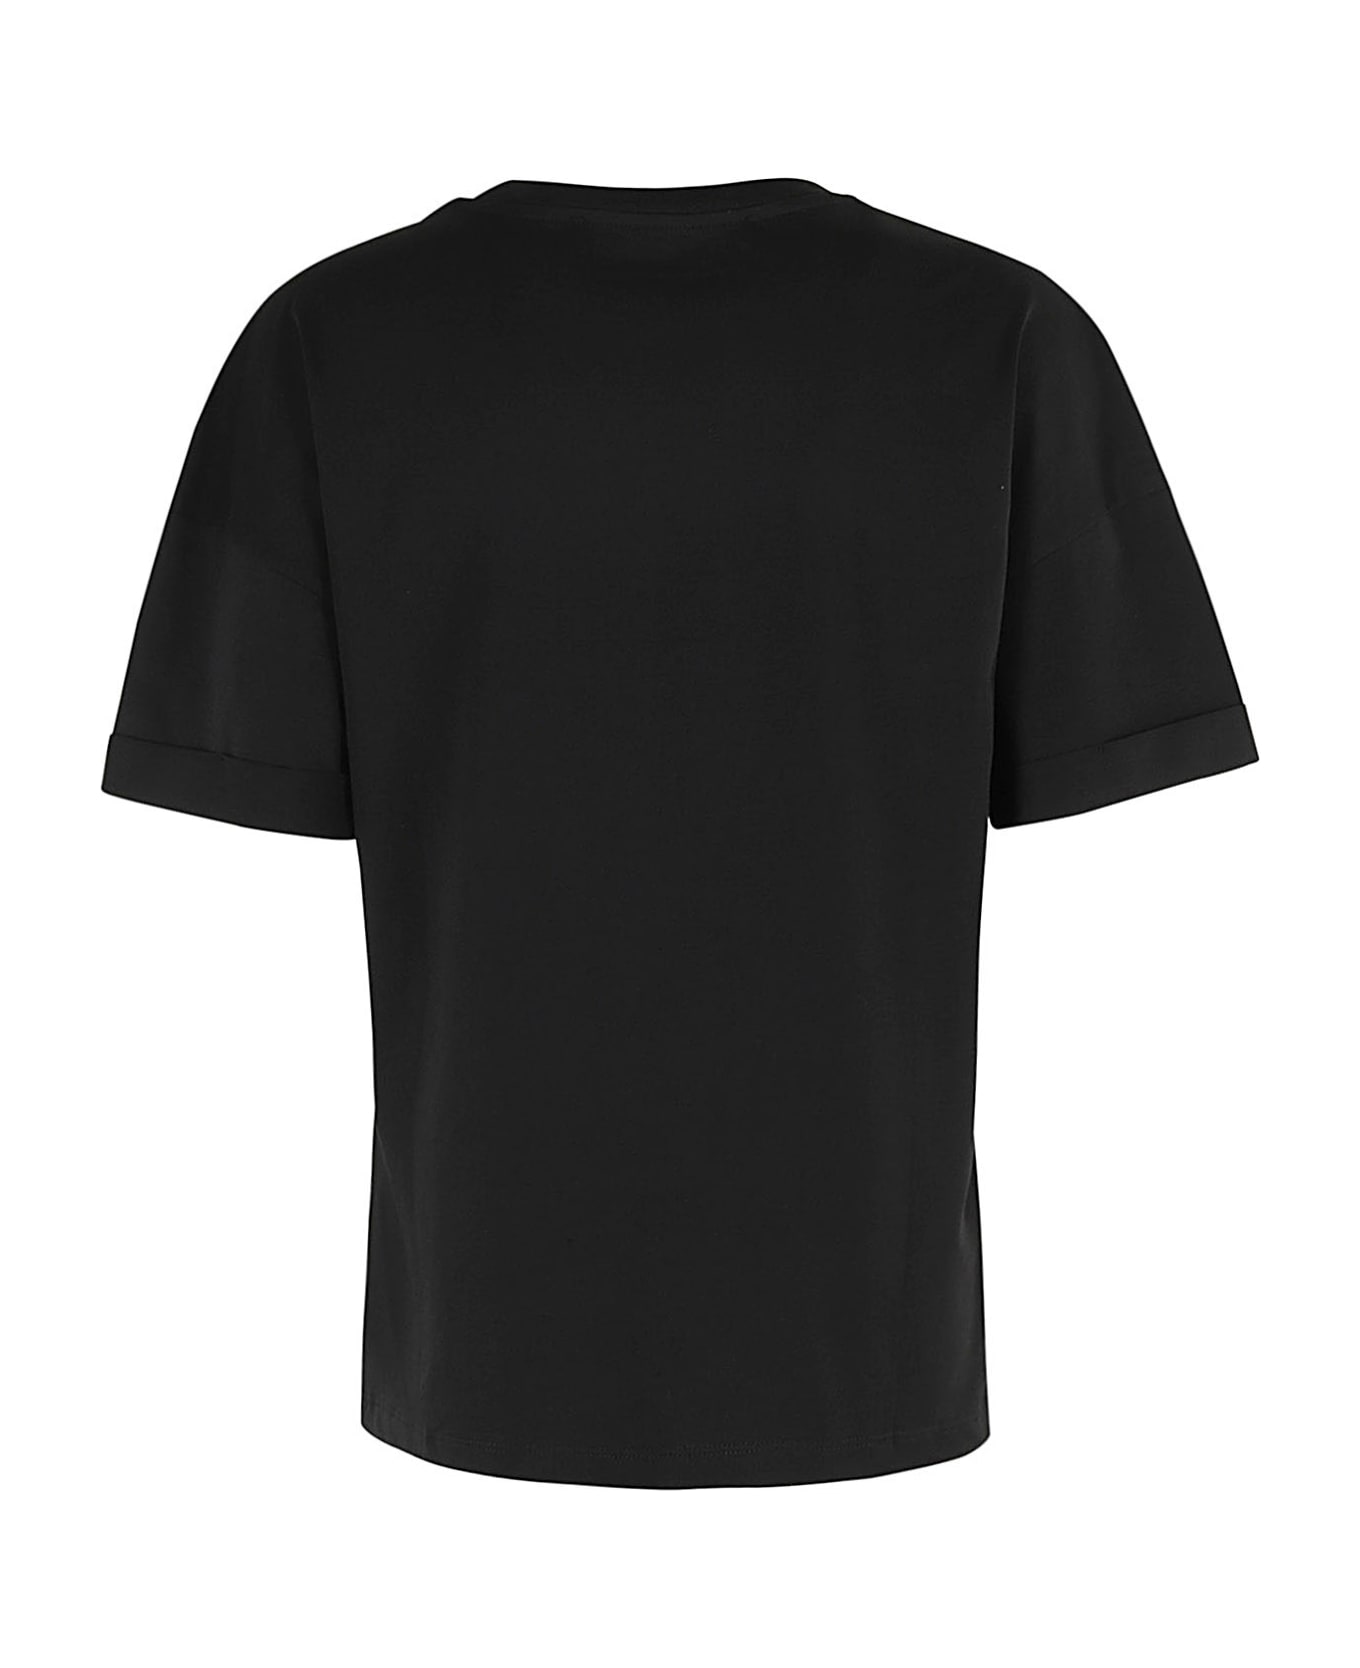 Federica Tosi T Shirt - Nero